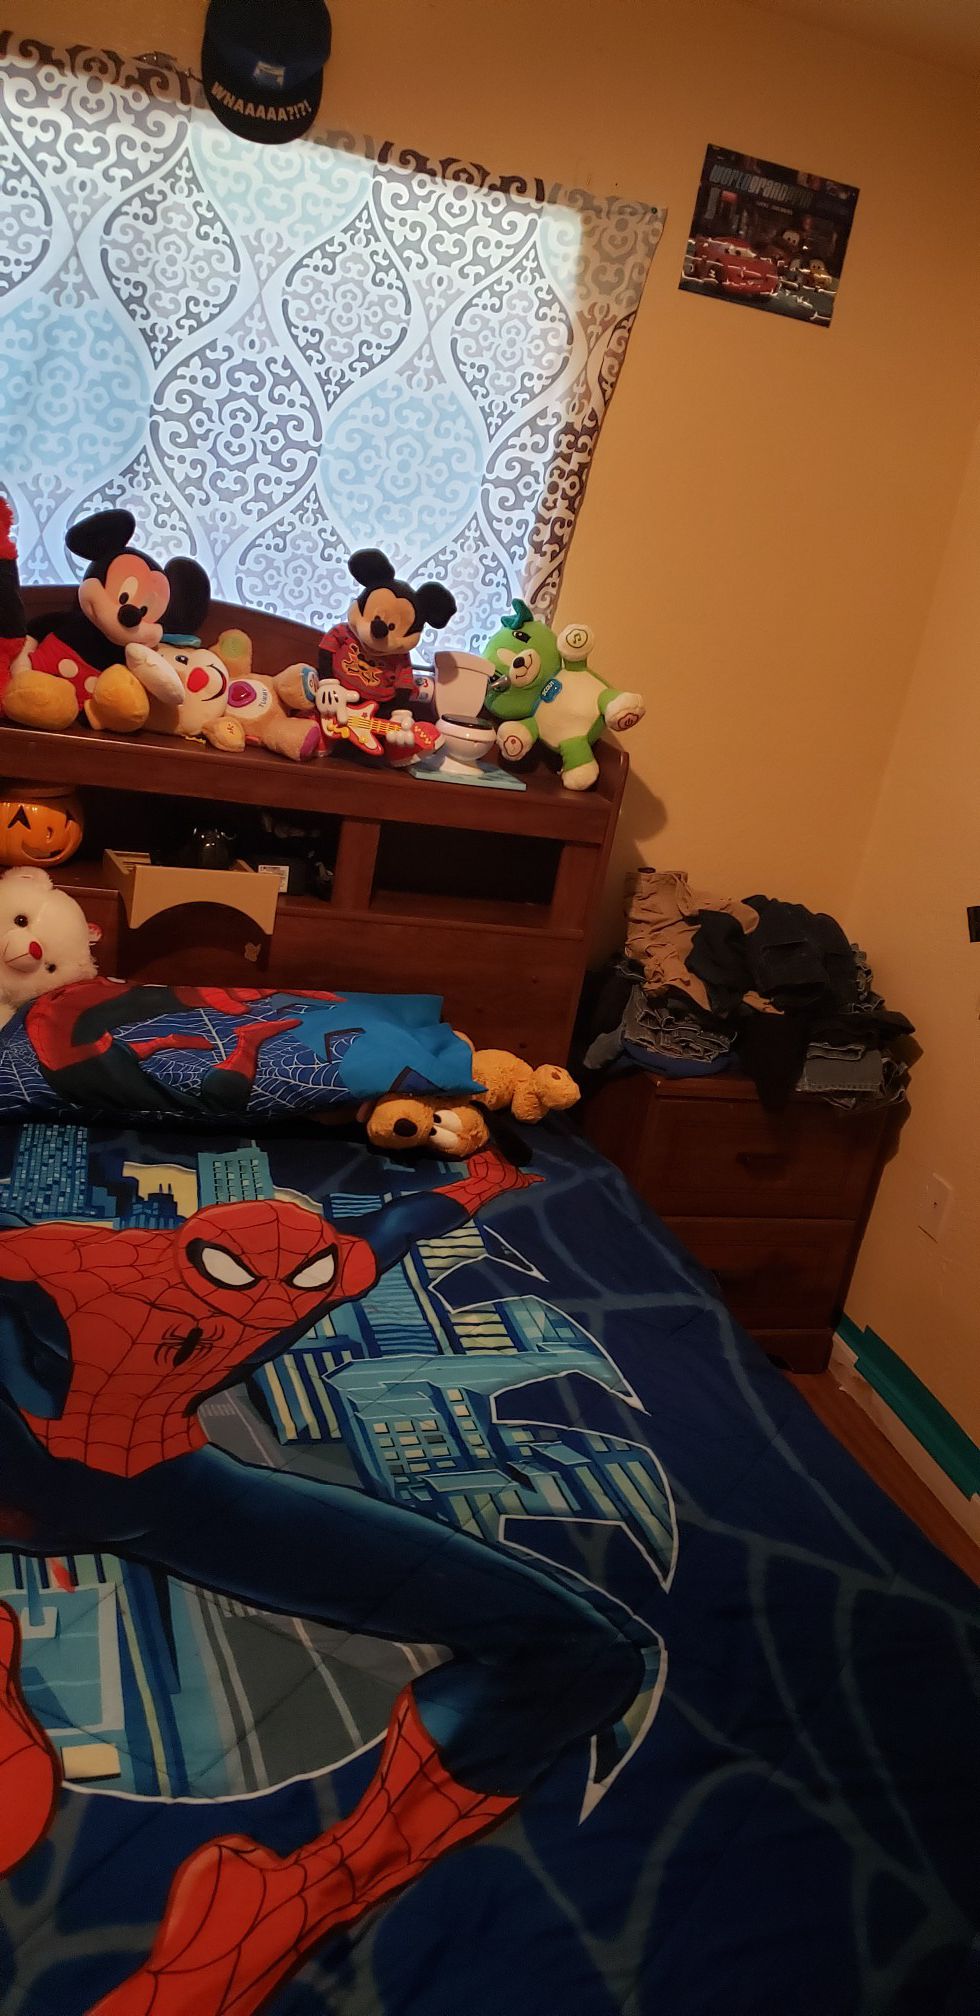 Full size children's bedroom set